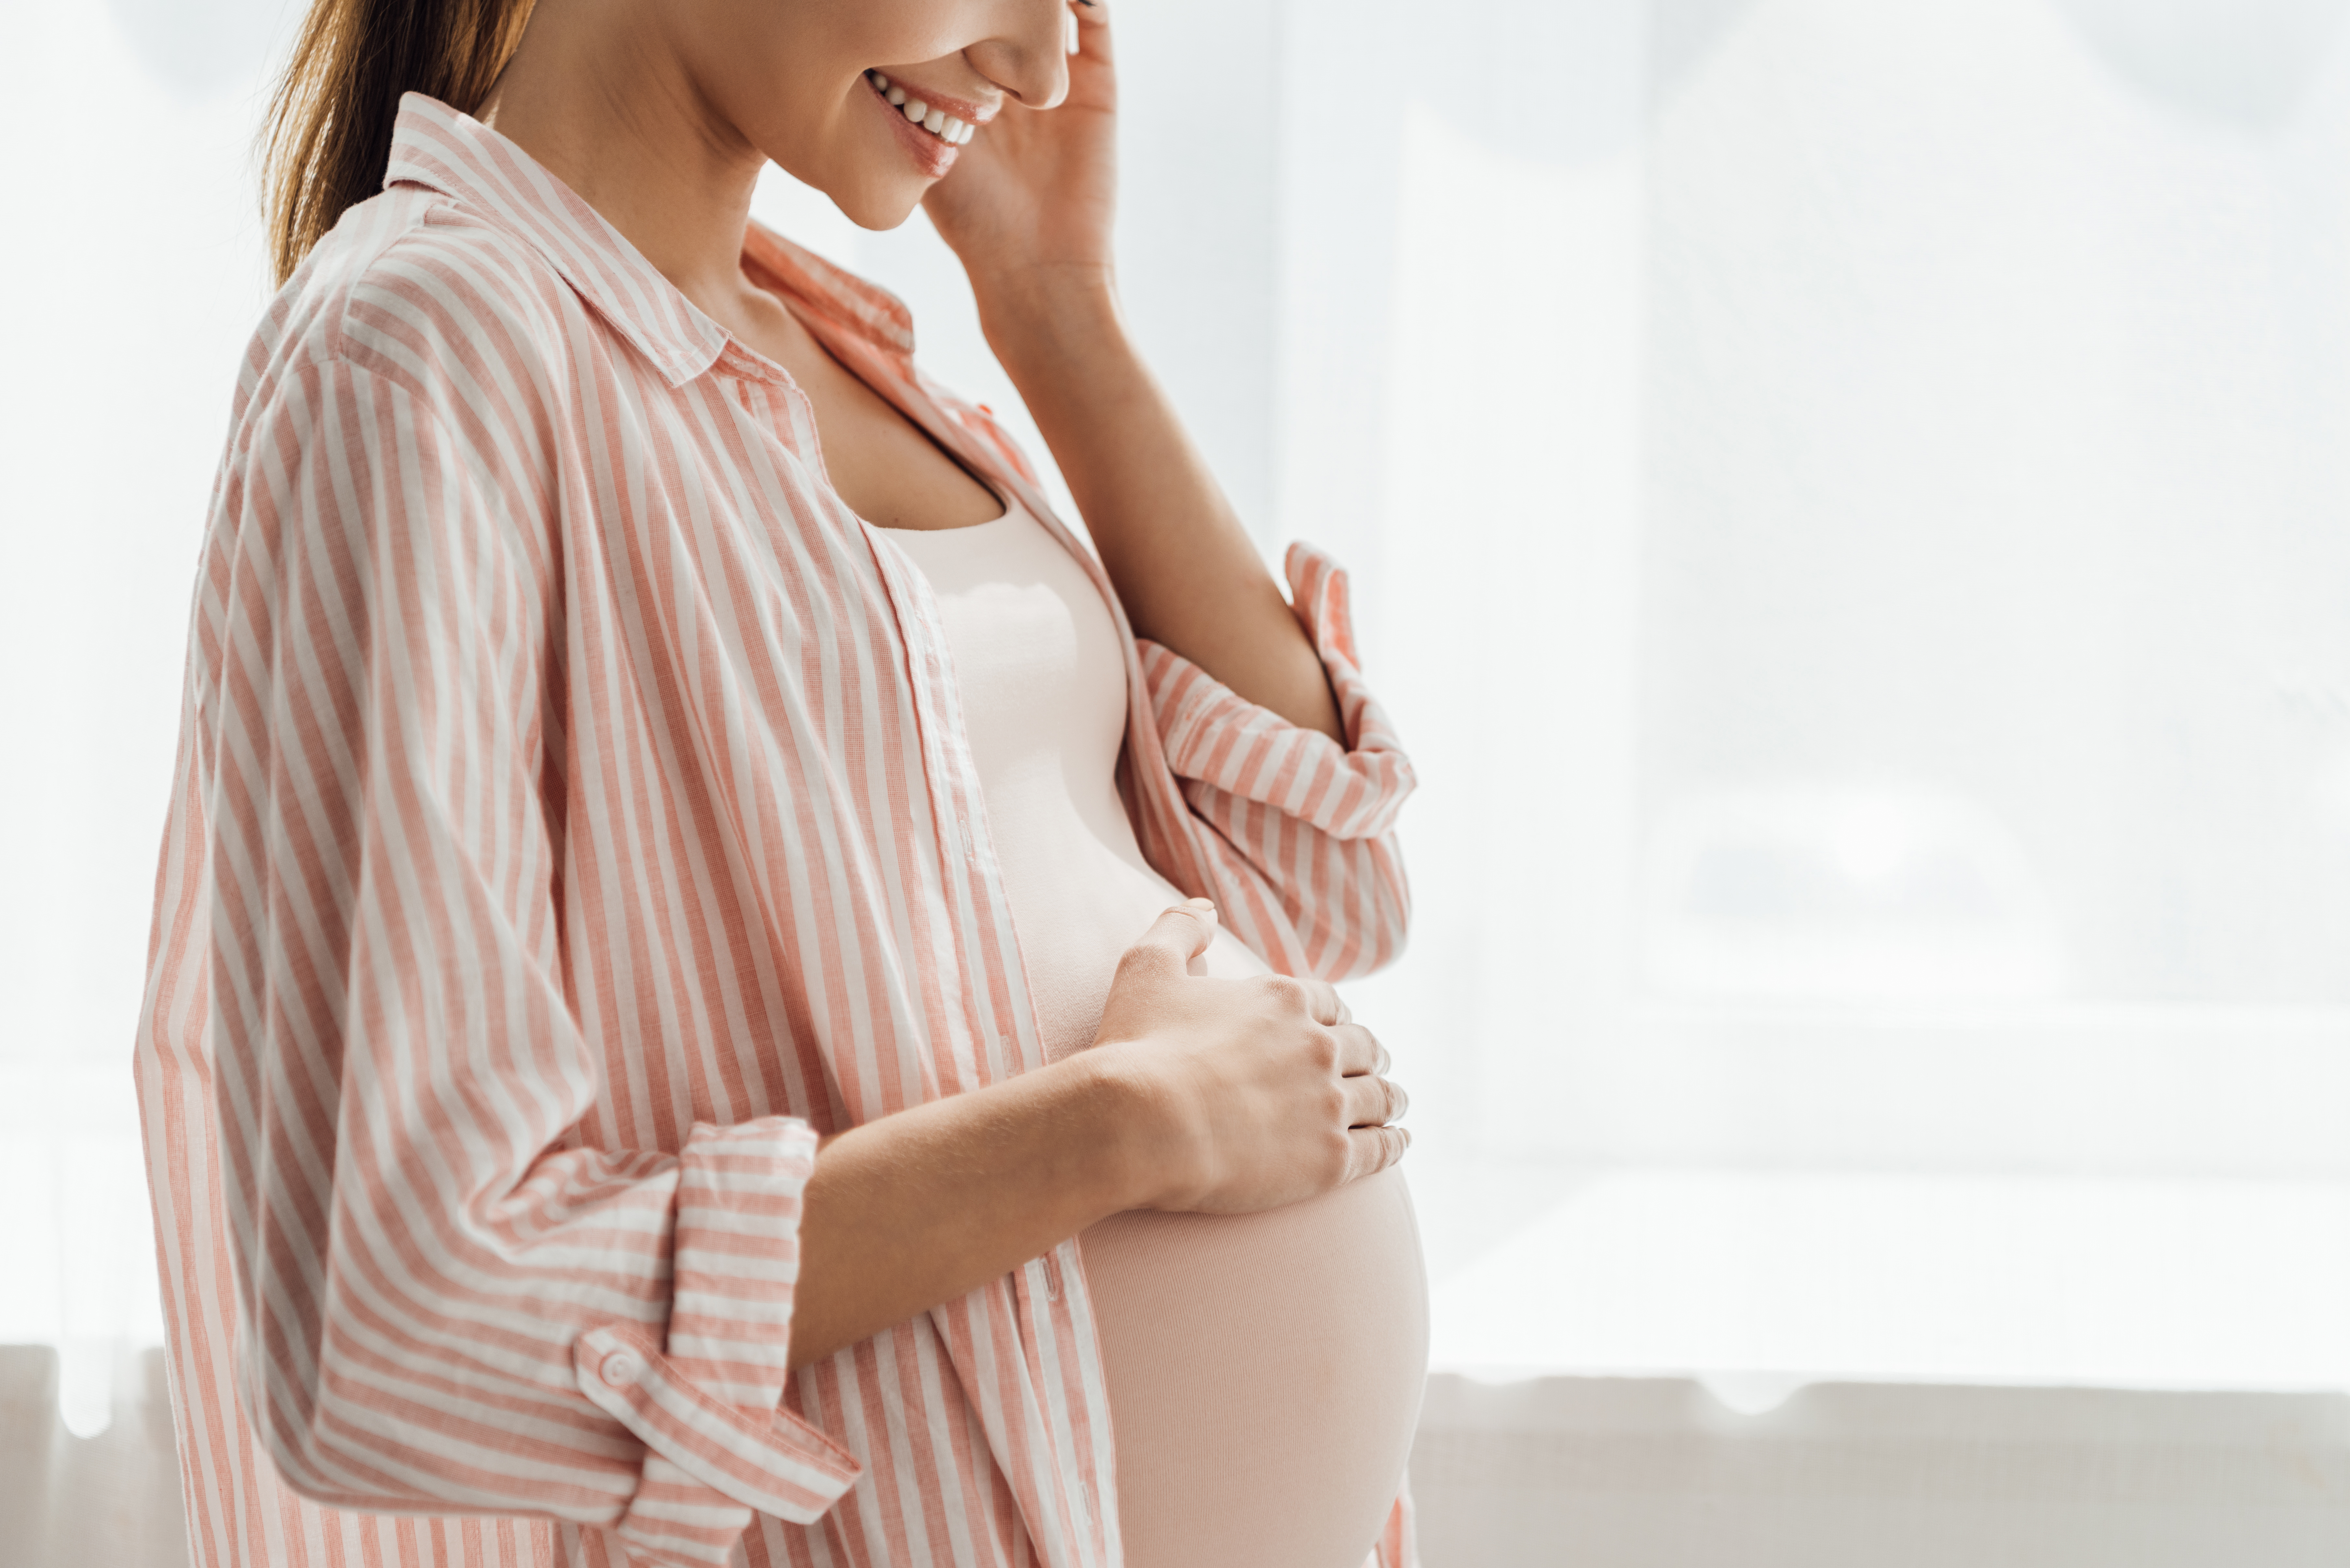 En ce qui concerne les émotions et l’humeur, les liens entre la mère et l’enfant sont basés sur les gènes mais aussi sur les expériences maternelles prénatales (Visuel Adobe Stock 291480726)